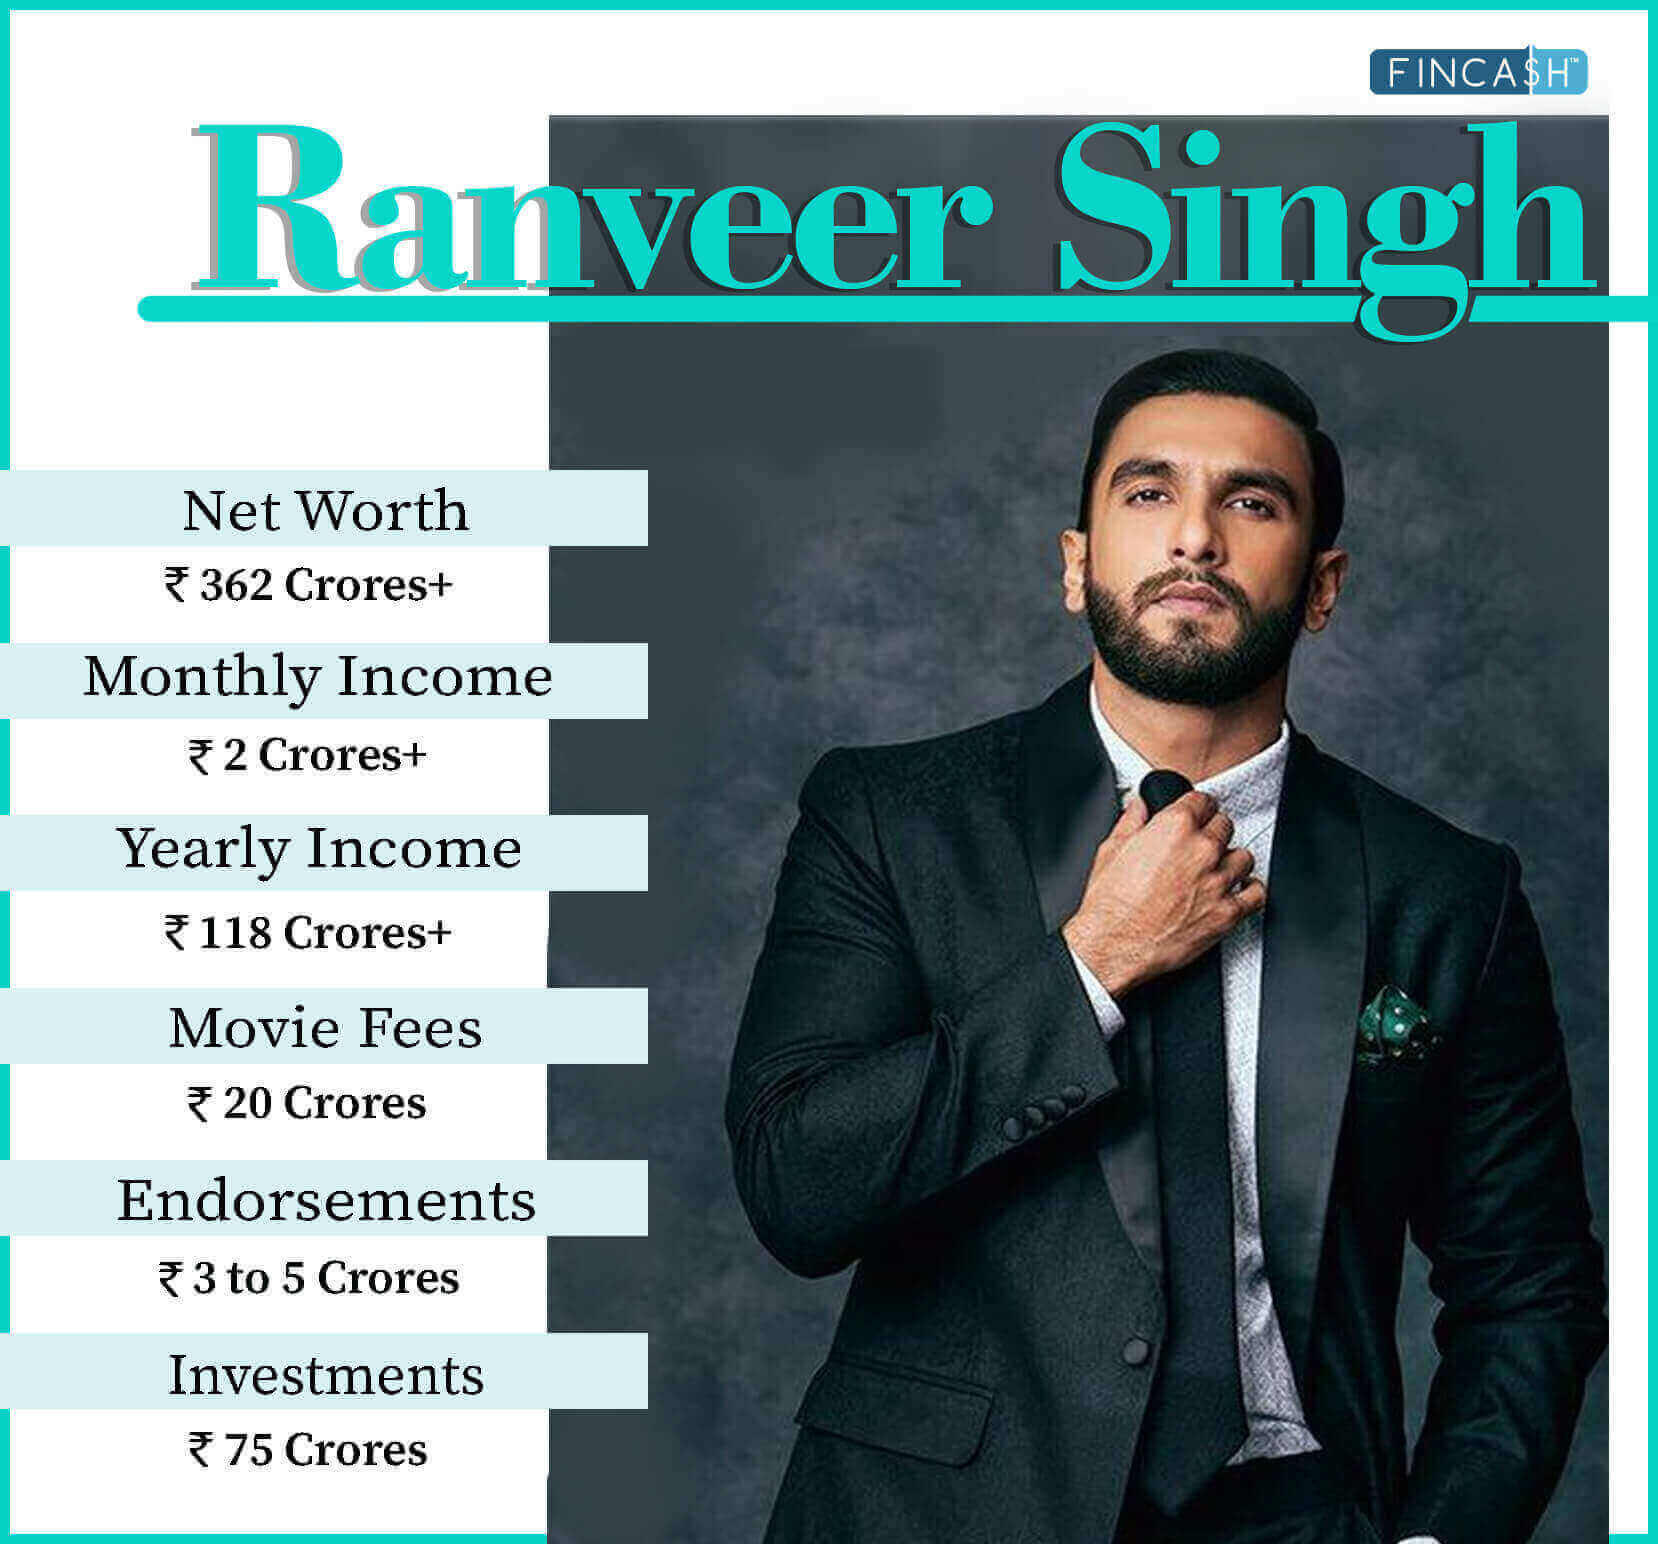 Ranveer Singh Net Worth